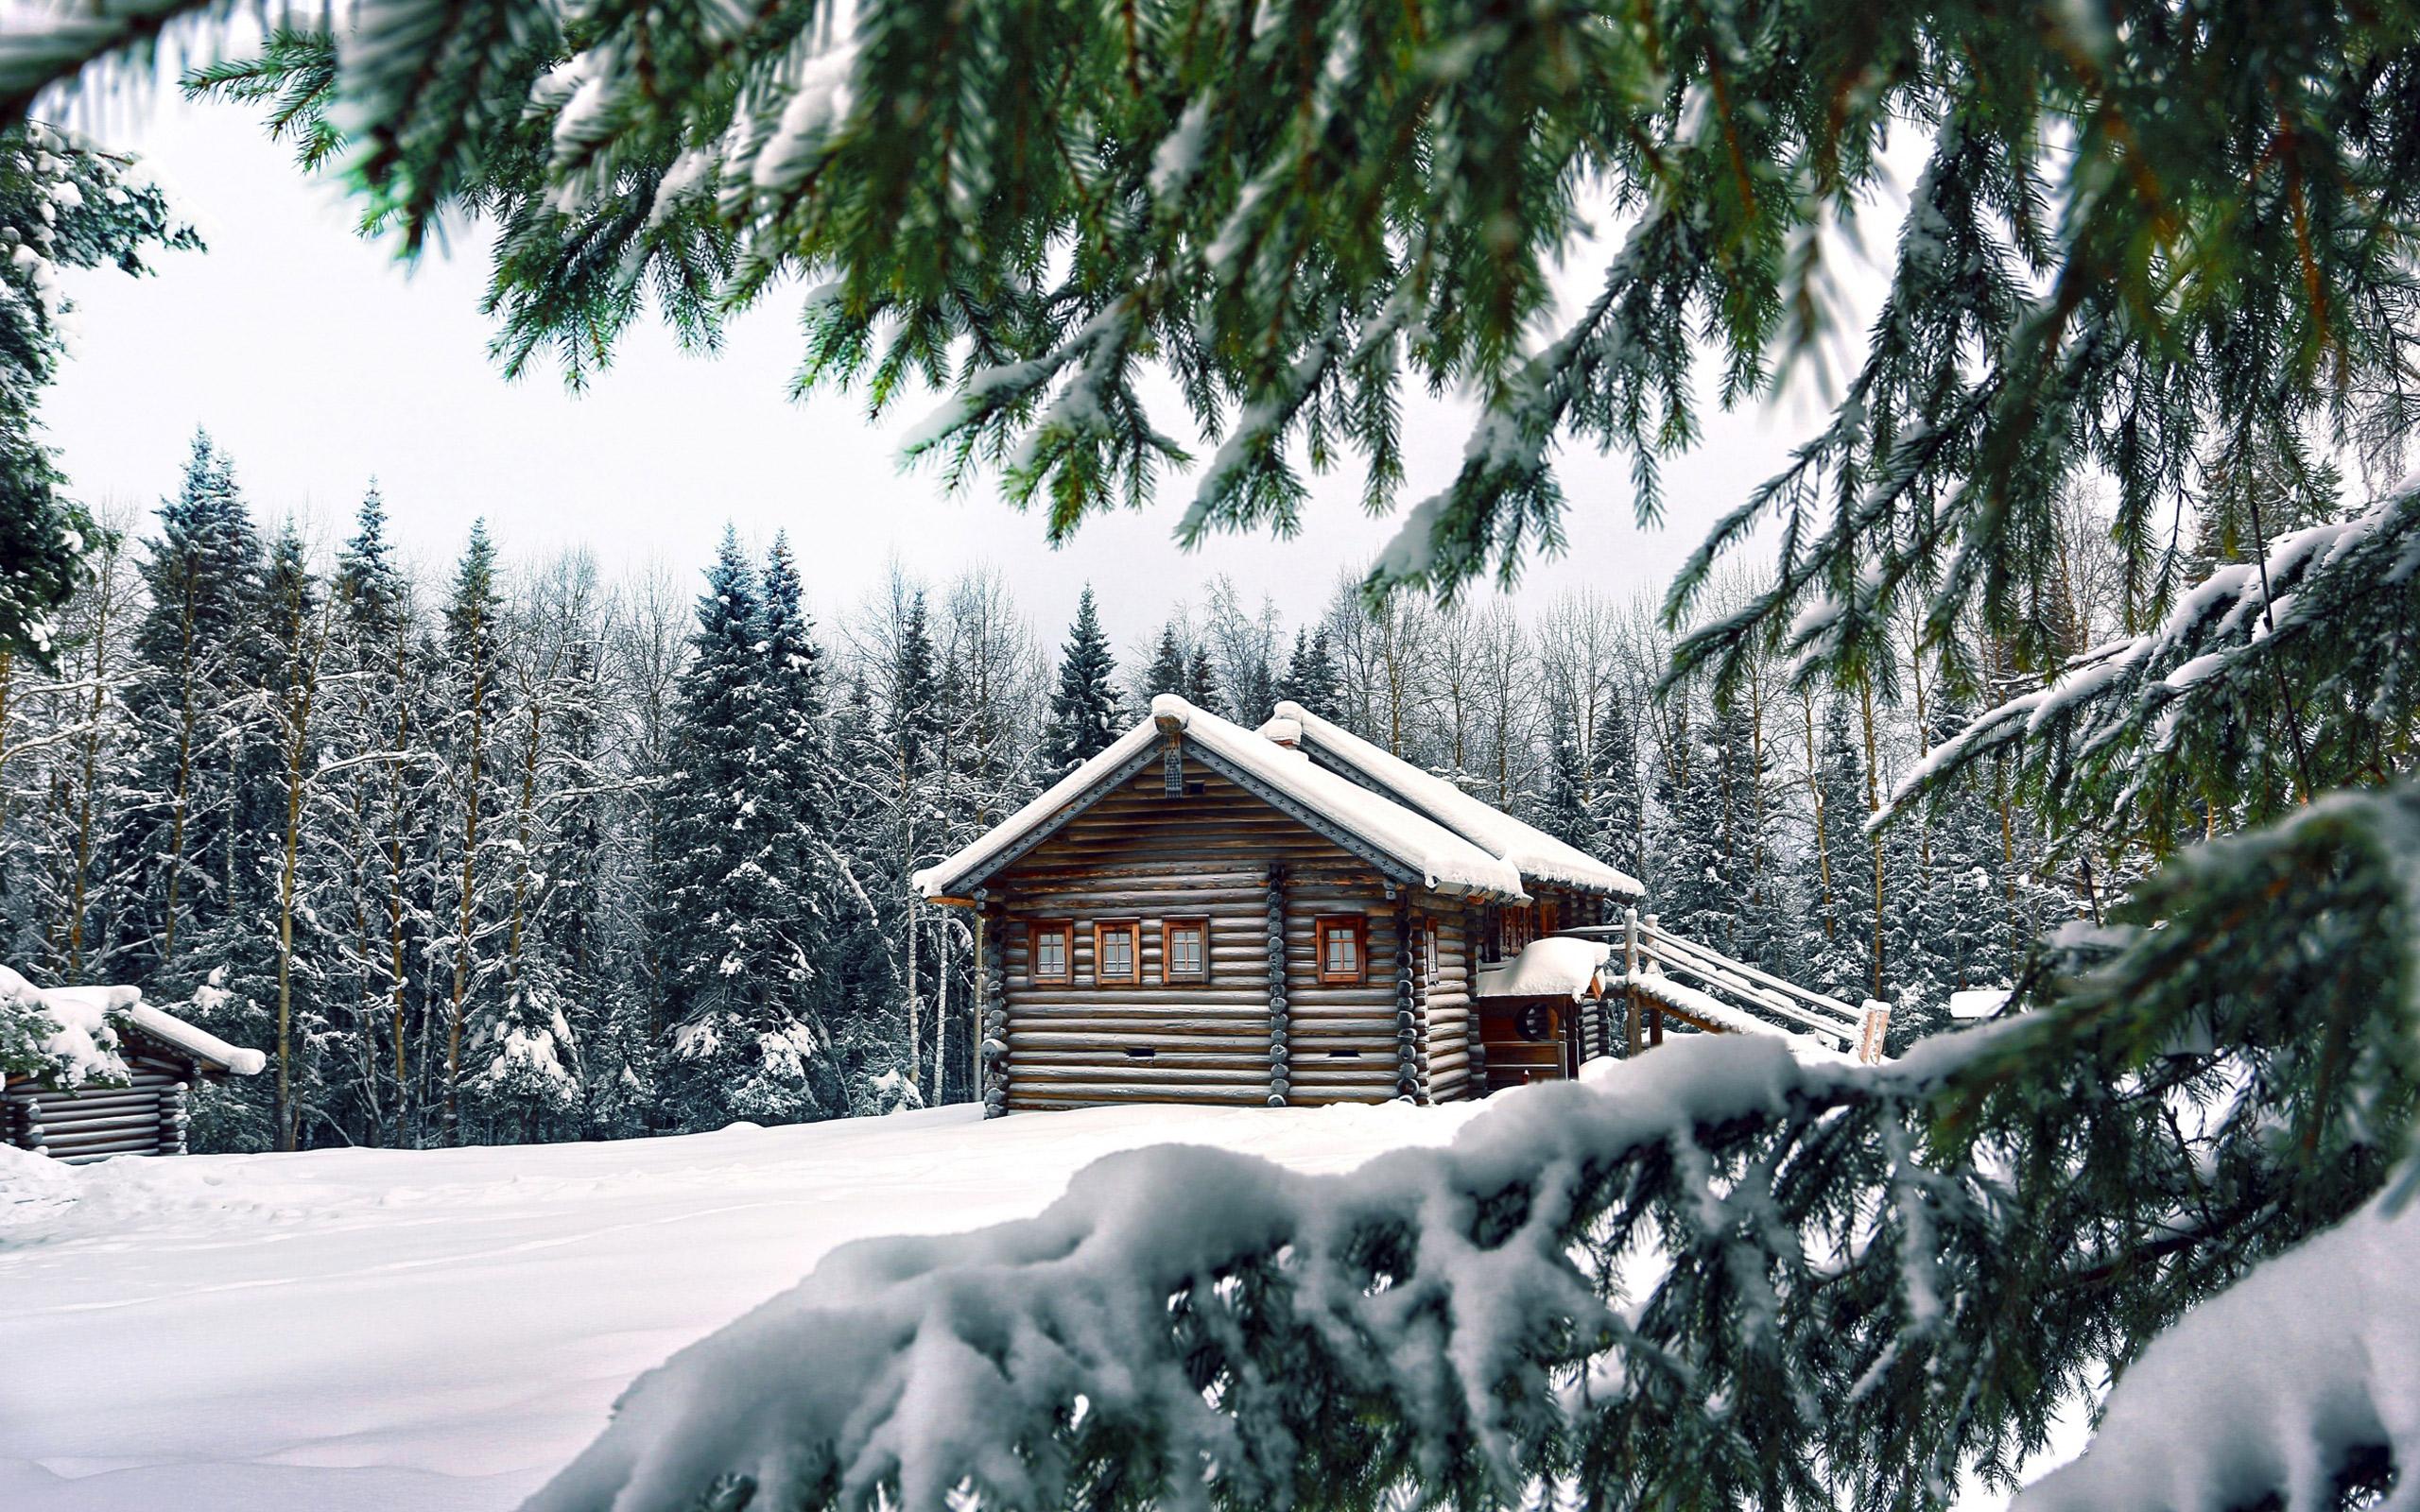 Зимний пейзаж фото высокого качества: фото, изображения и картинки